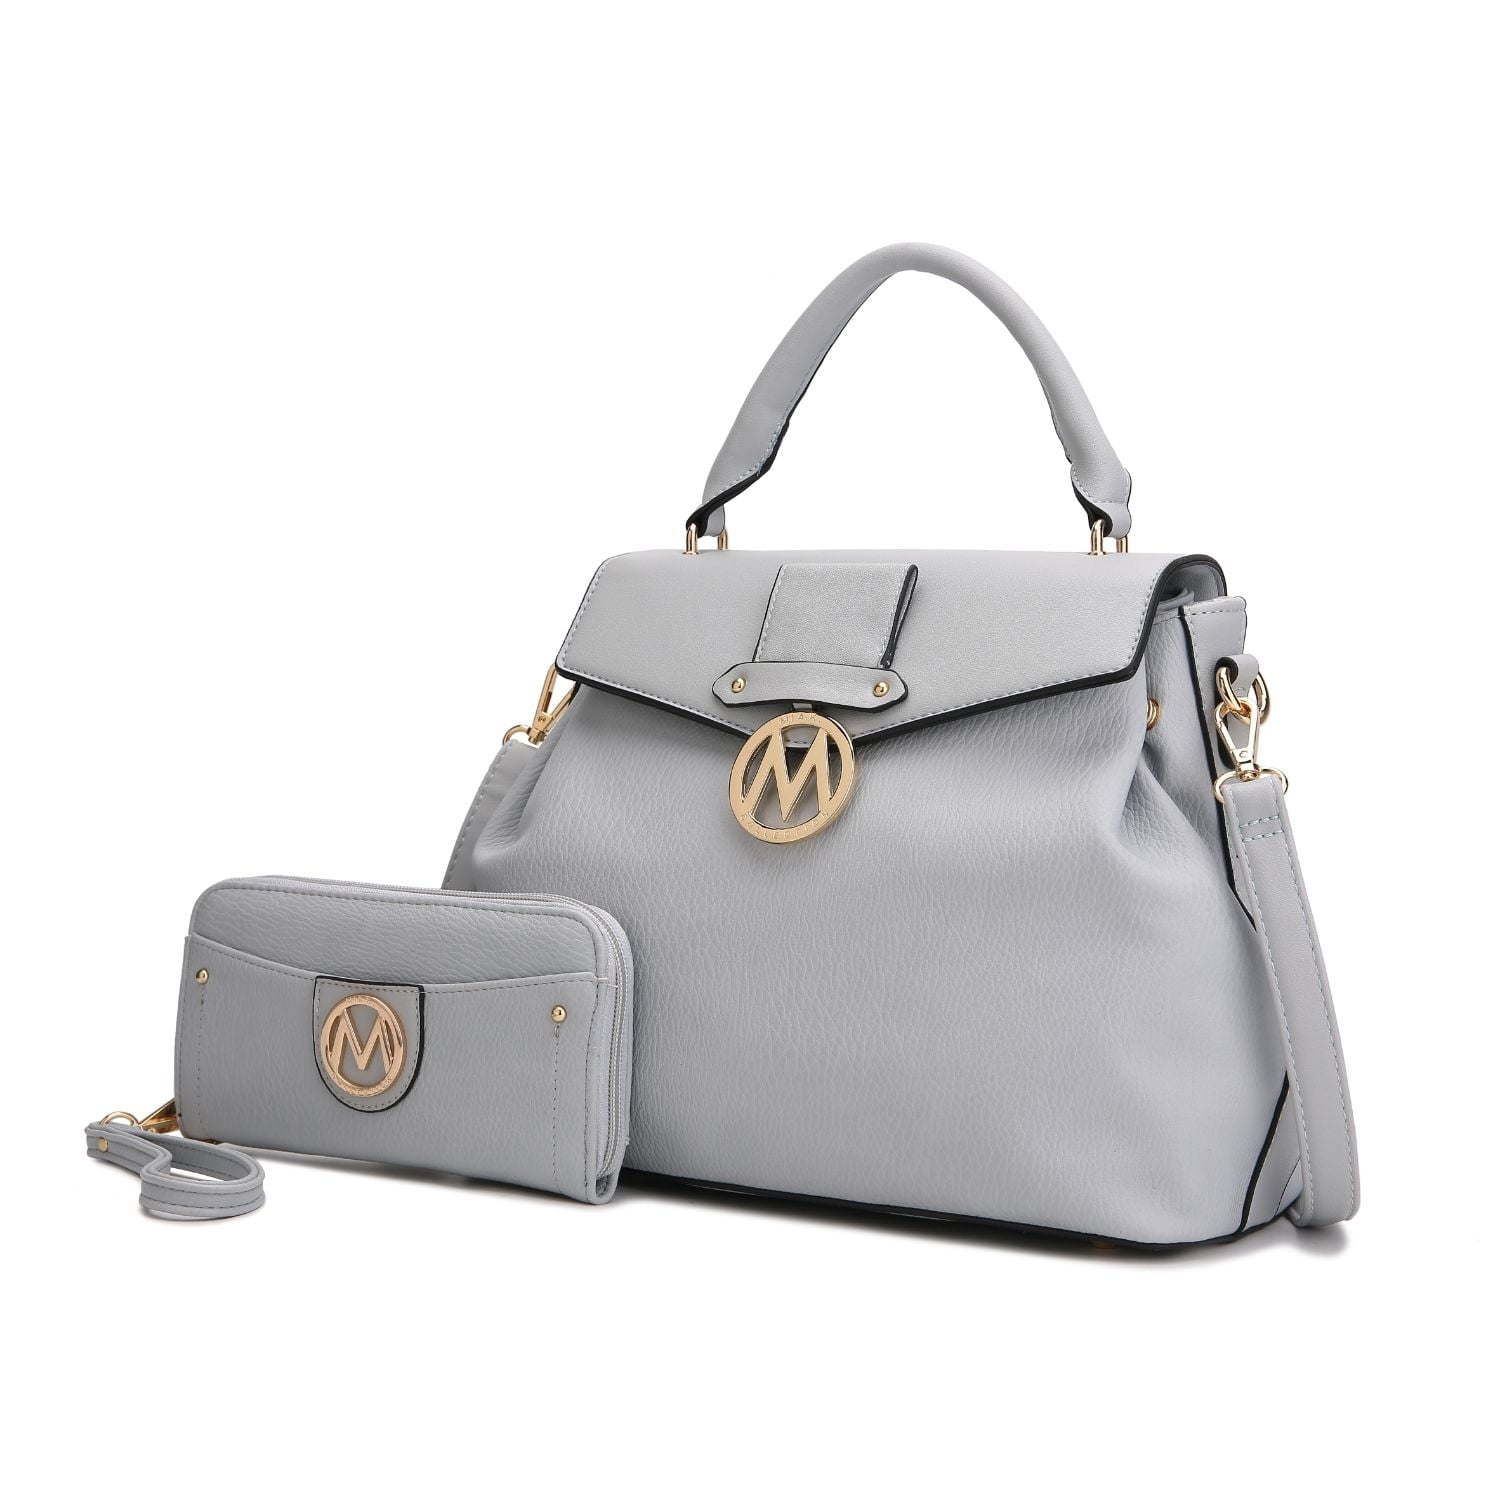 MKF Collection - Aurora Satchel Handbag & Wallet by Mia K., Dove Grey 3P's Inclusive Beauty